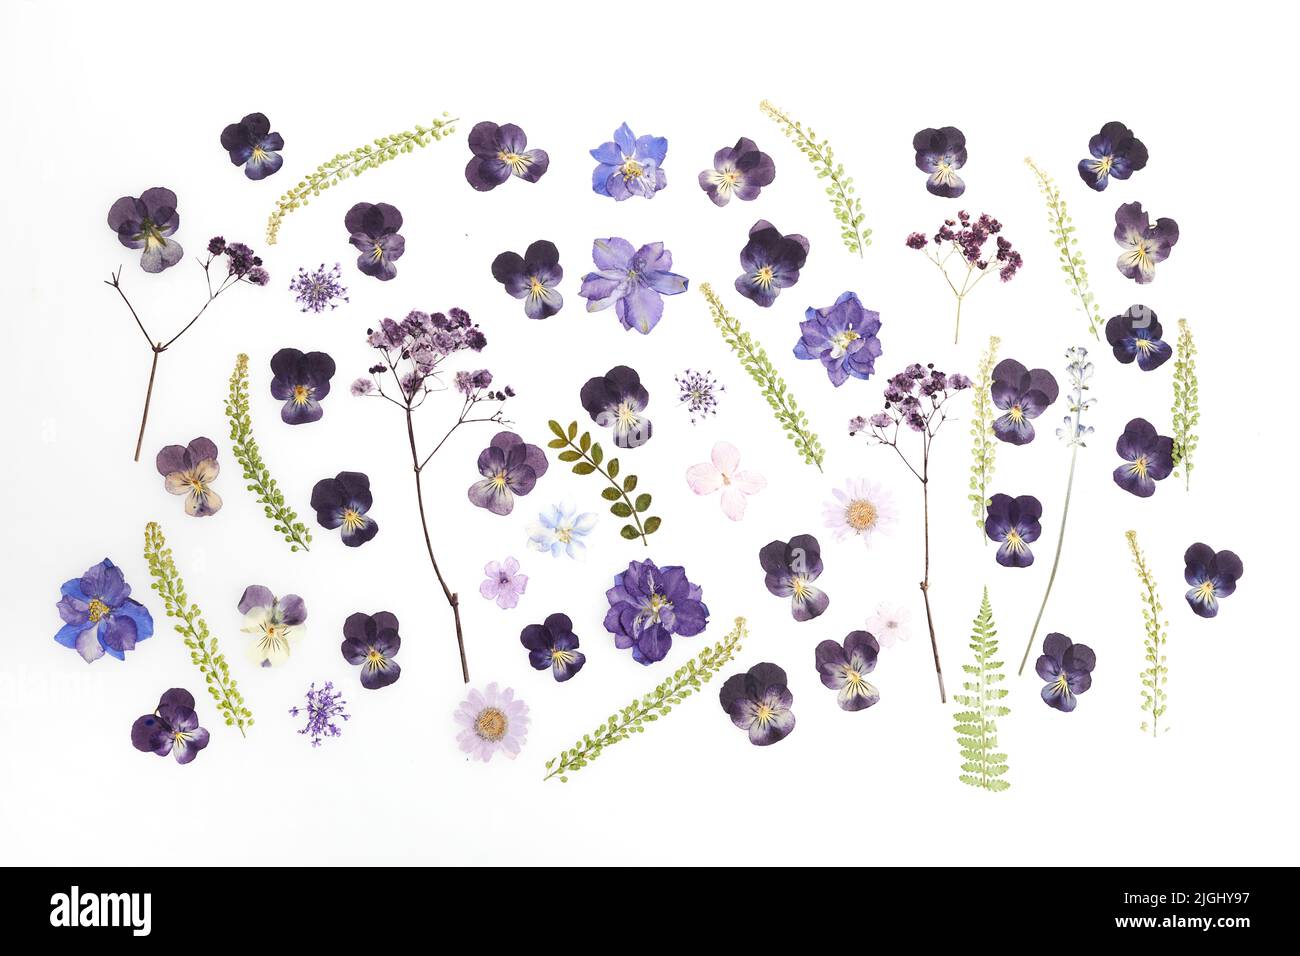 Disegno di fiori secchi pressati isolato su sfondo bianco Foto Stock